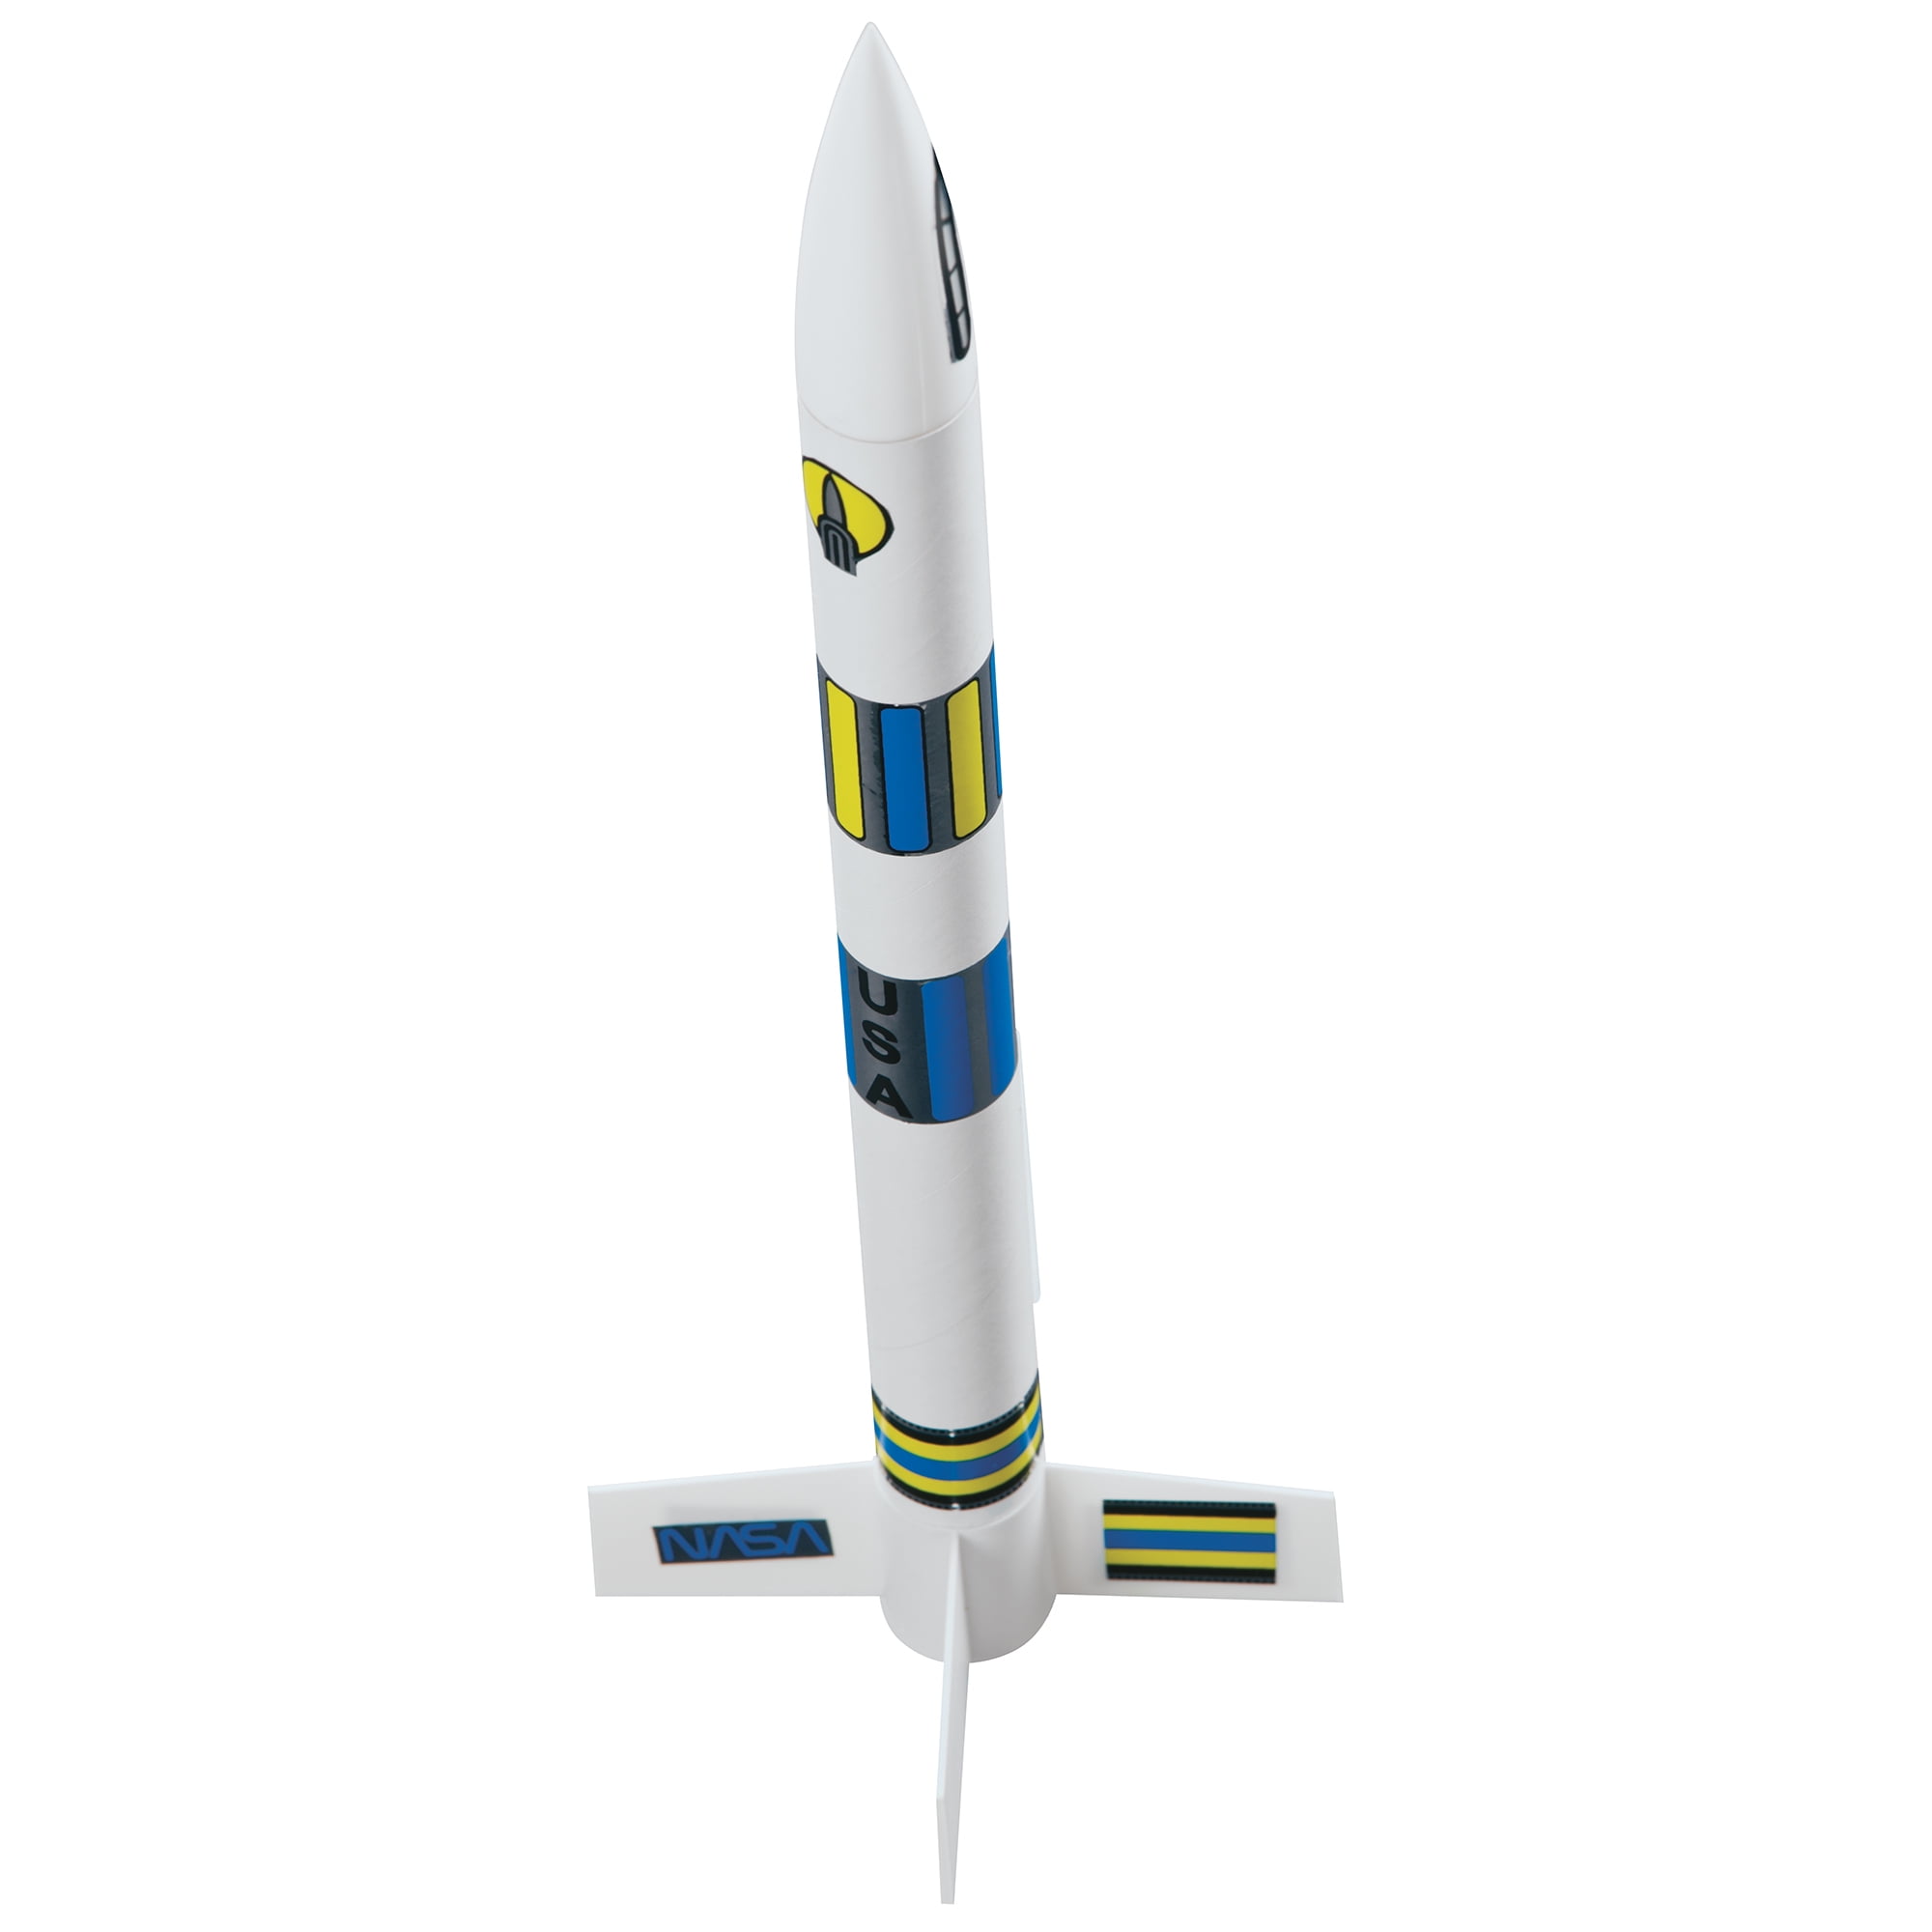 Chrome Dome Gold Series E2x Rocket Kit Estes Est2181 for sale online 